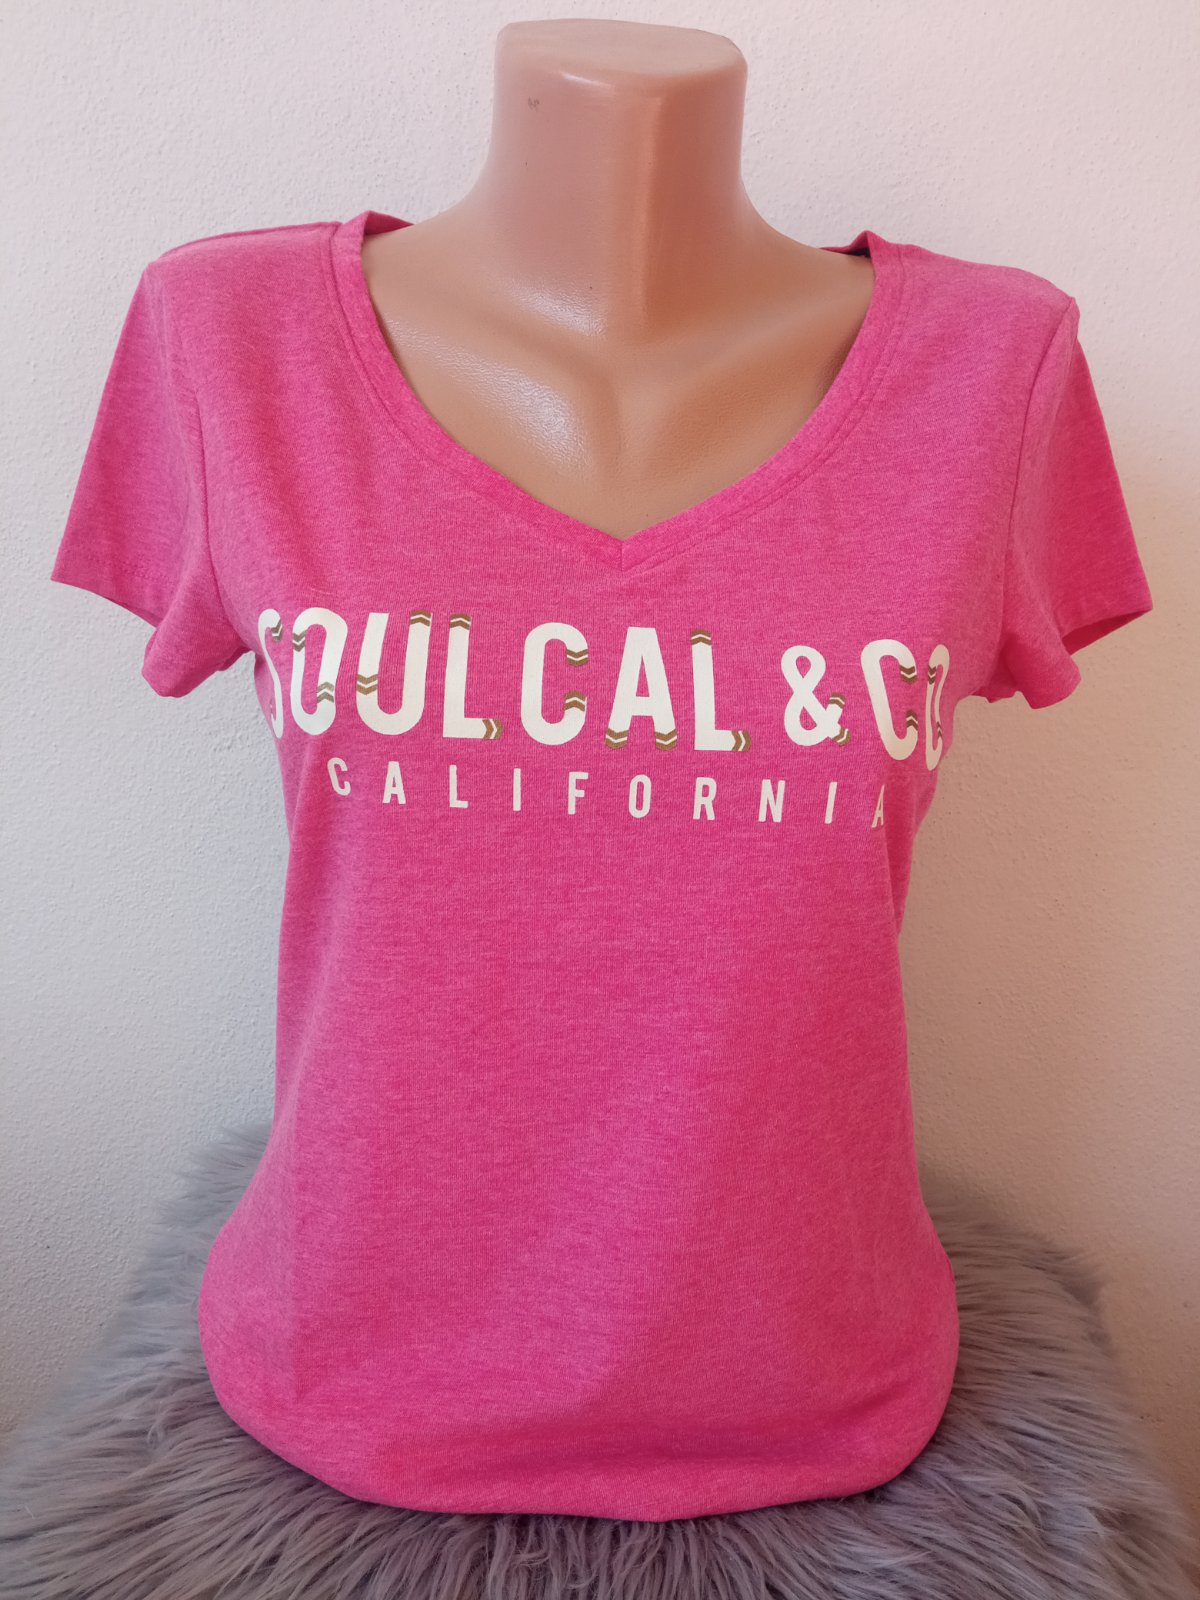 Ružové tričko s nápisom Soul Cal (S)